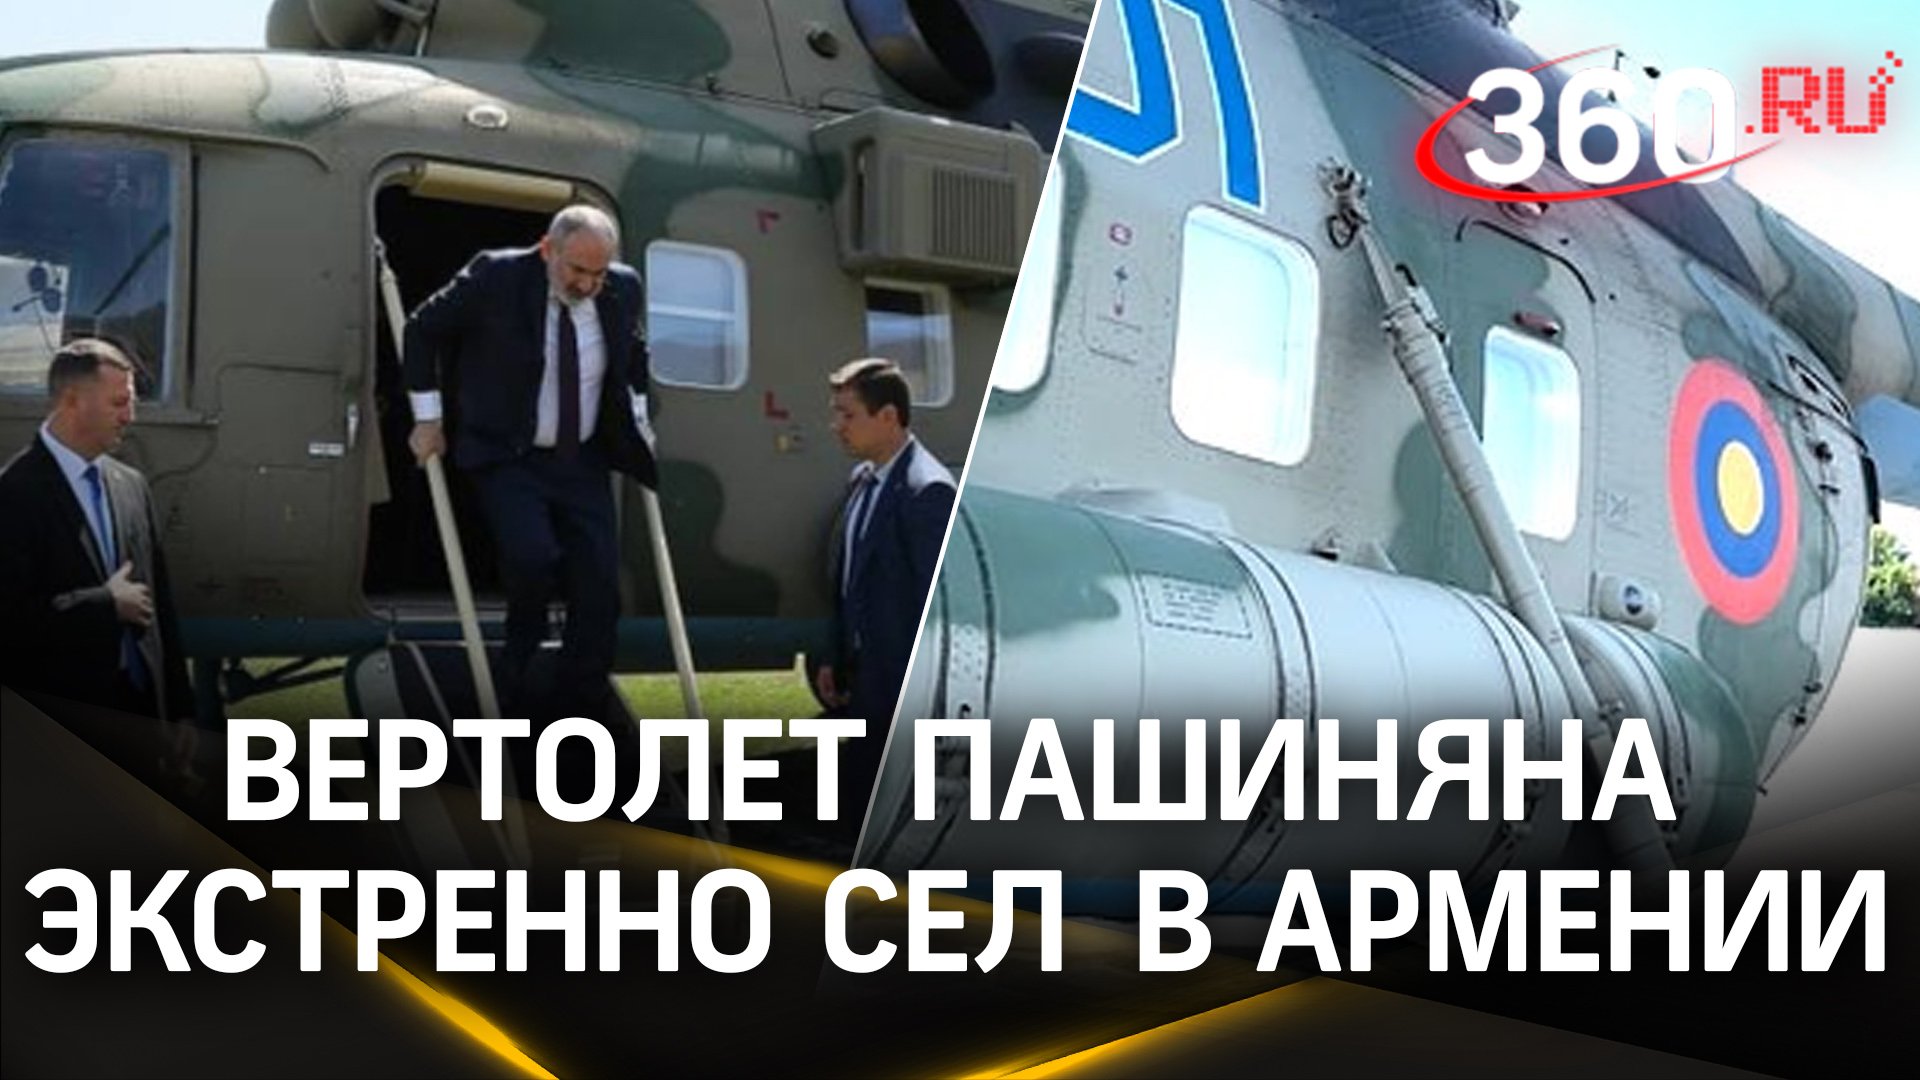 Вертолет Пашиняна совершил экстренную посадку в Армении